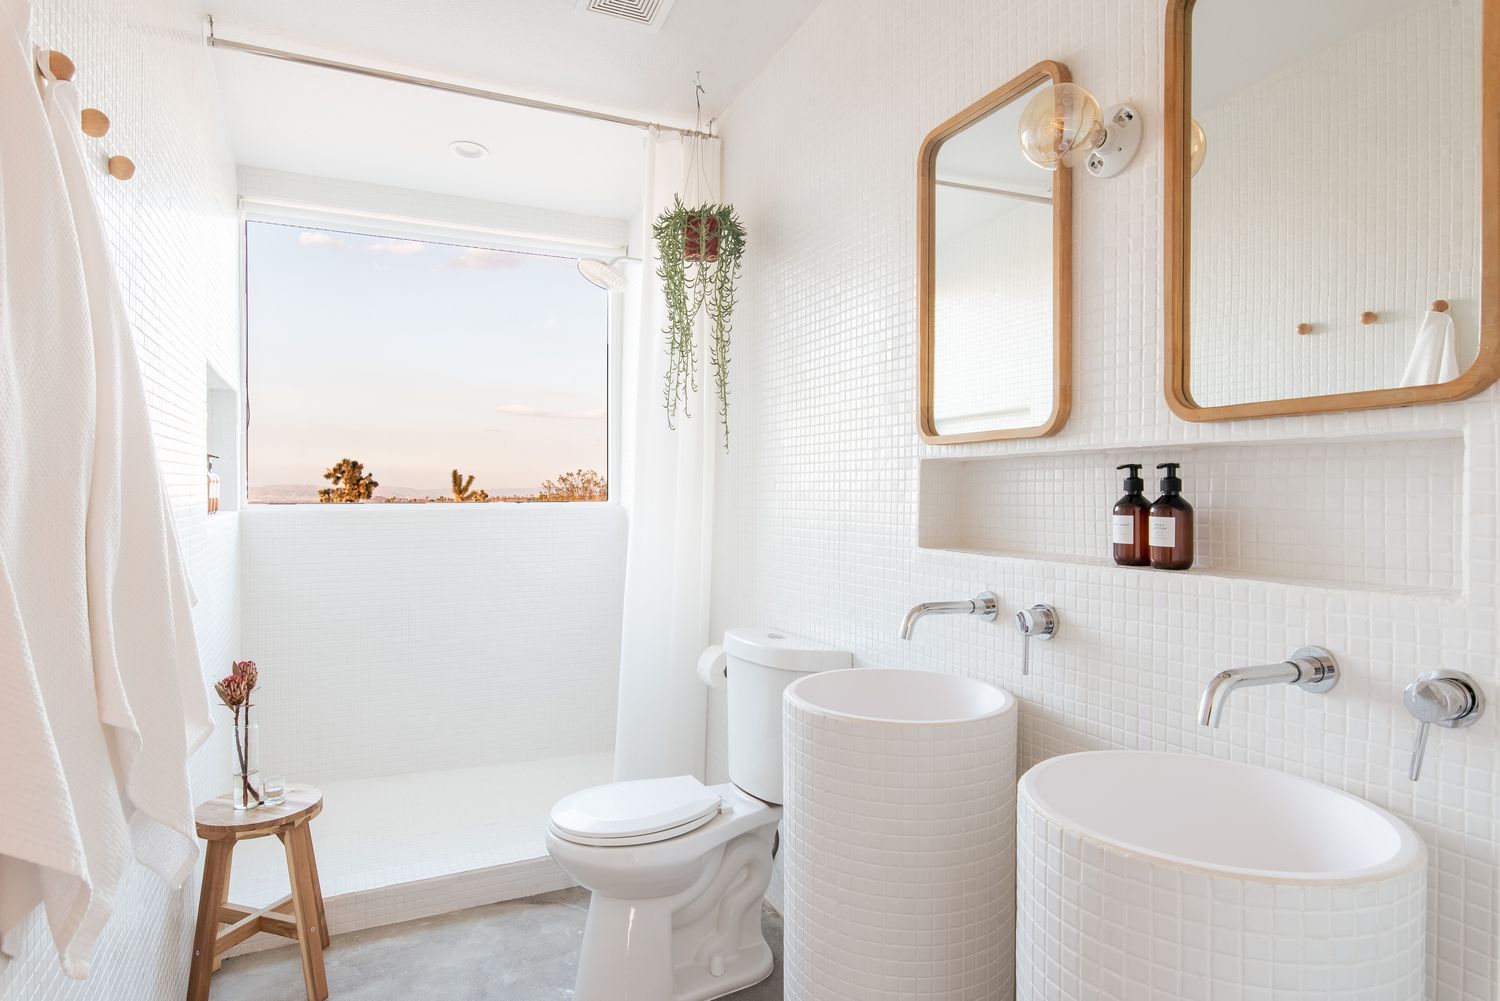 Petite salle de bain remodelée toute blanche avec plante suspendue carrelage mosaïque blanc et fenêtre de douche